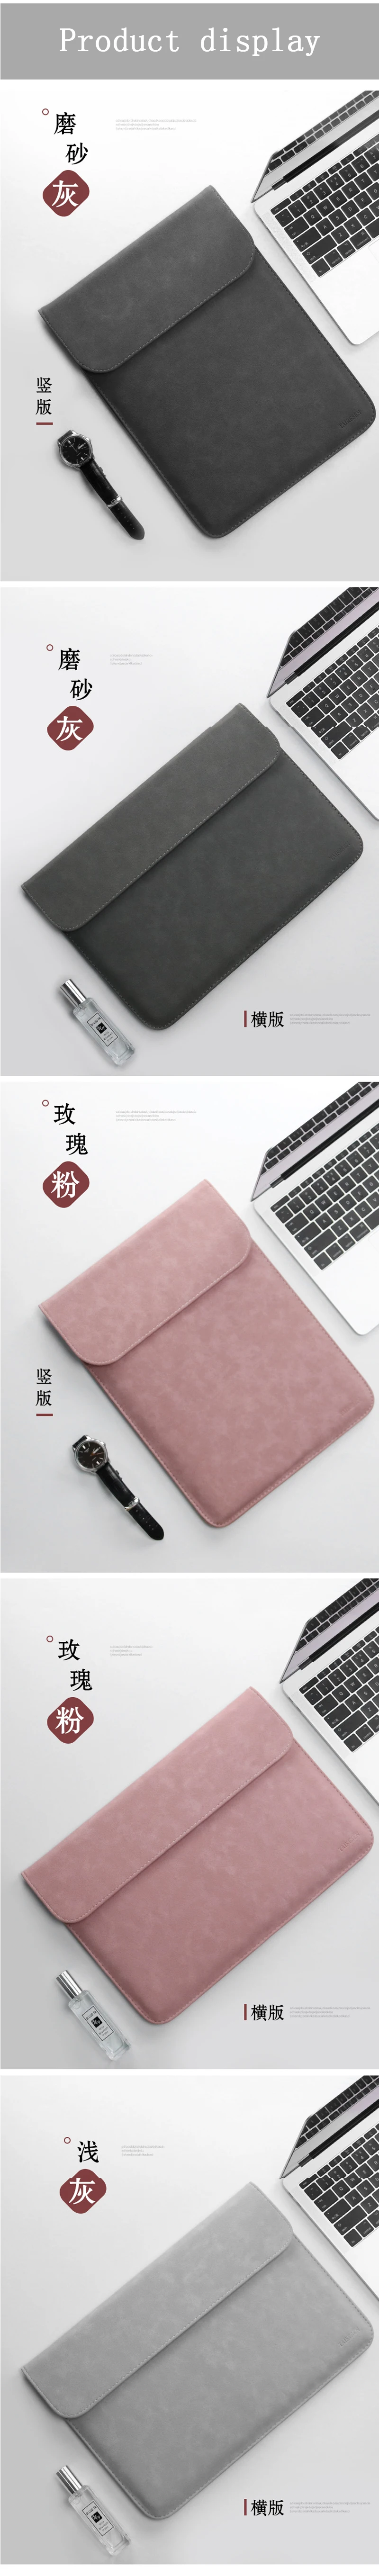 Скраб PU кожаный чехол для ноутбука 15,6 14 для Macbook Air 13 Чехол Pro 11 12 15 матовый чехол для Xiaomi Mi ноутбука 12,5 13,3